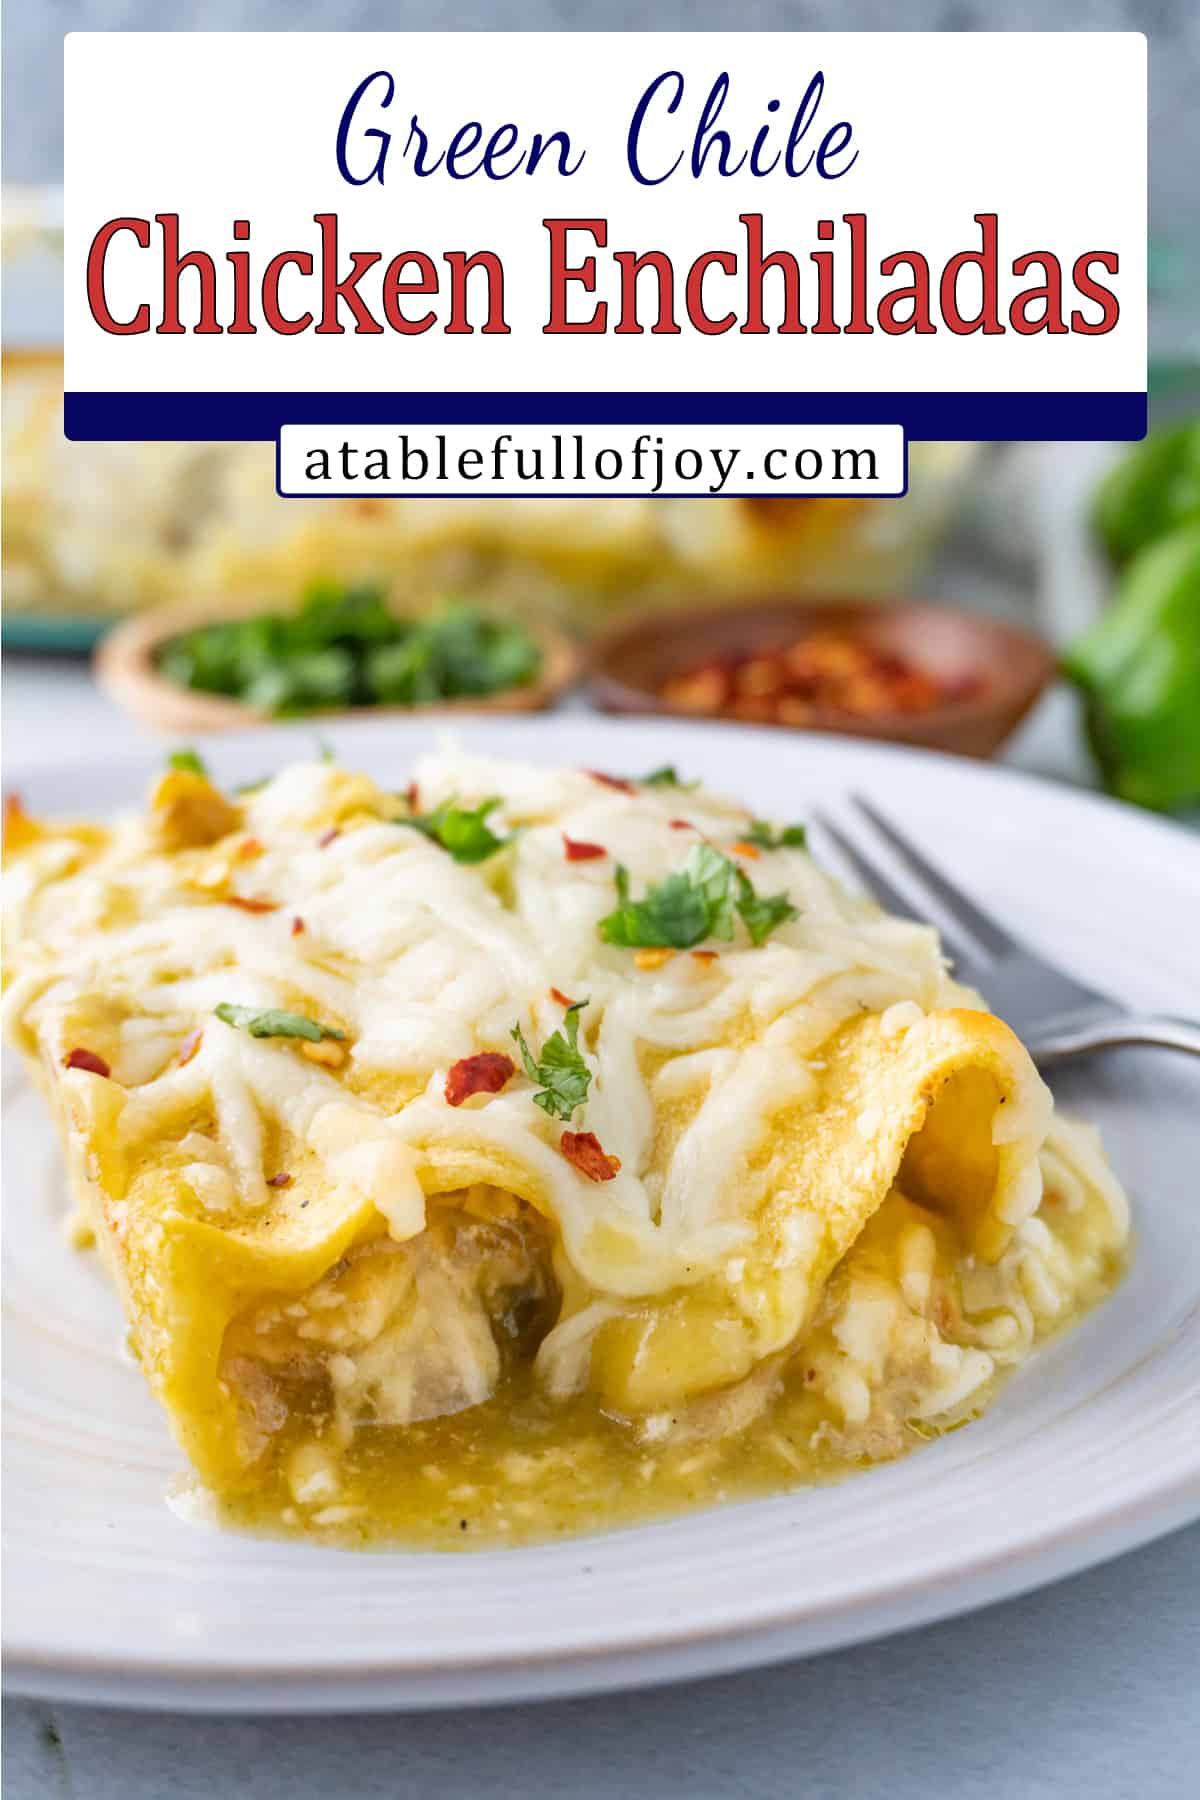 enchilada on plate pinterest pin